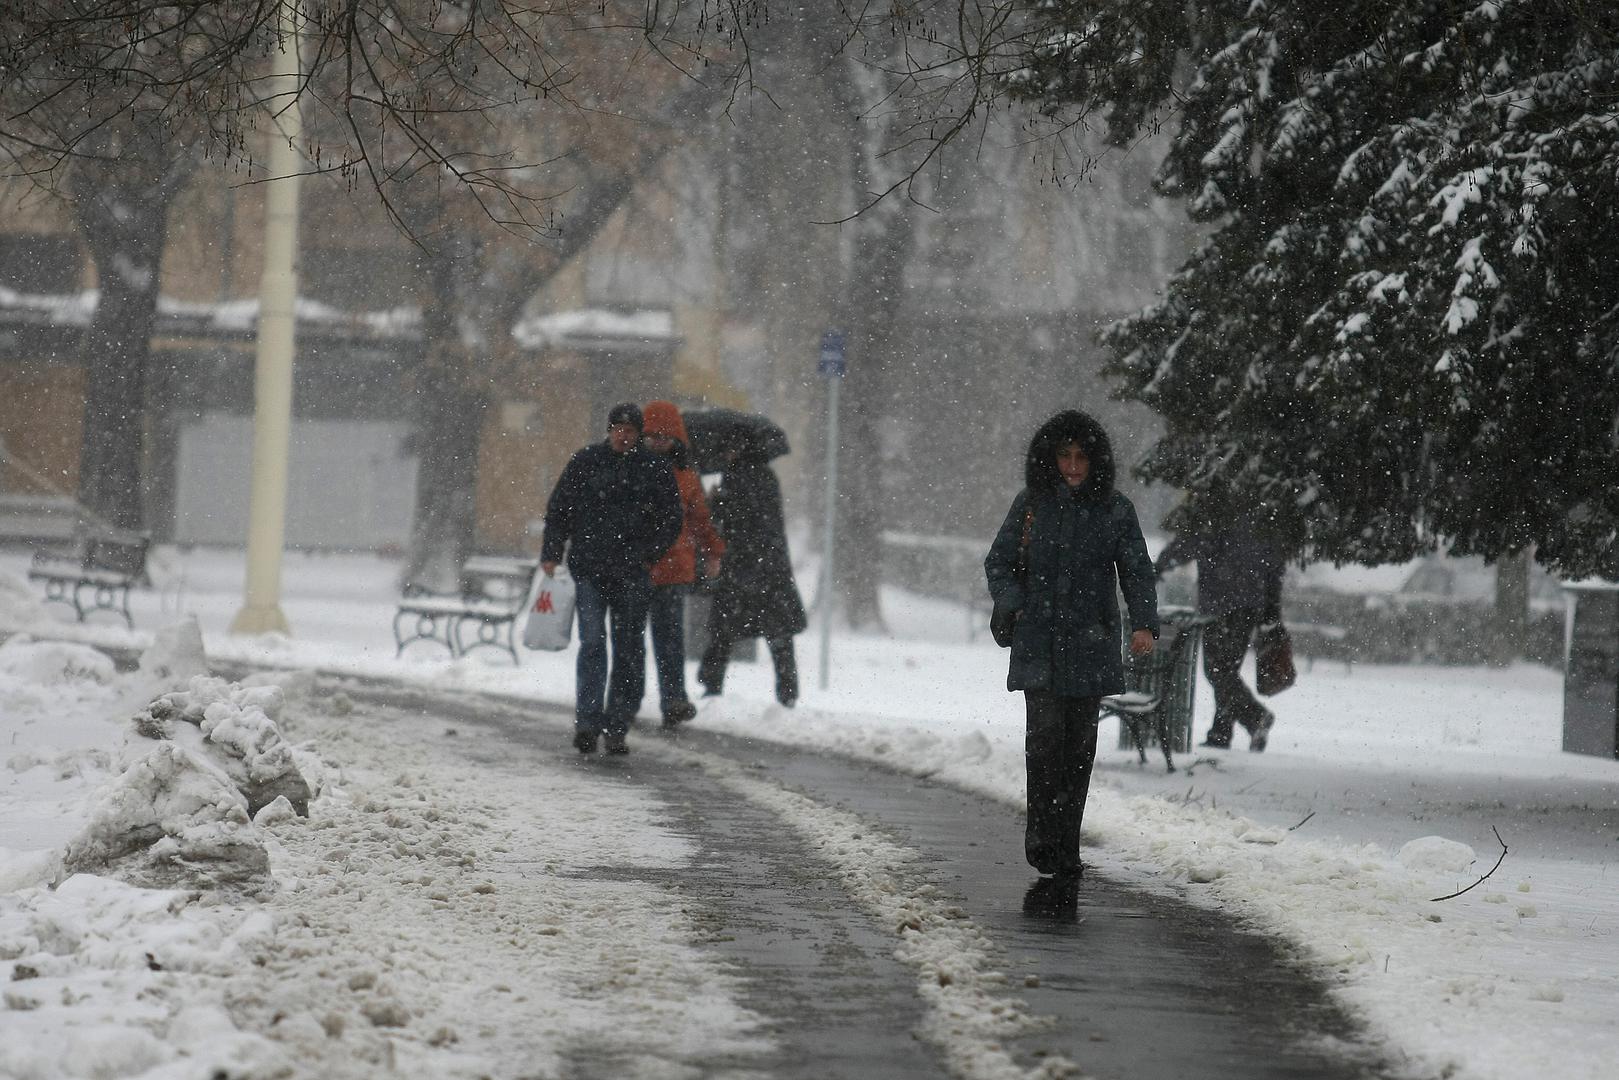 Naravno, ovako se Osijek nije probudio jutros, već prije točno 11 godina. Građani su tako 15. ožujka 2011. morali izvaditi jakne i vratiti se u zimsko raspoloženje jer je snijeg bio svugdje.

